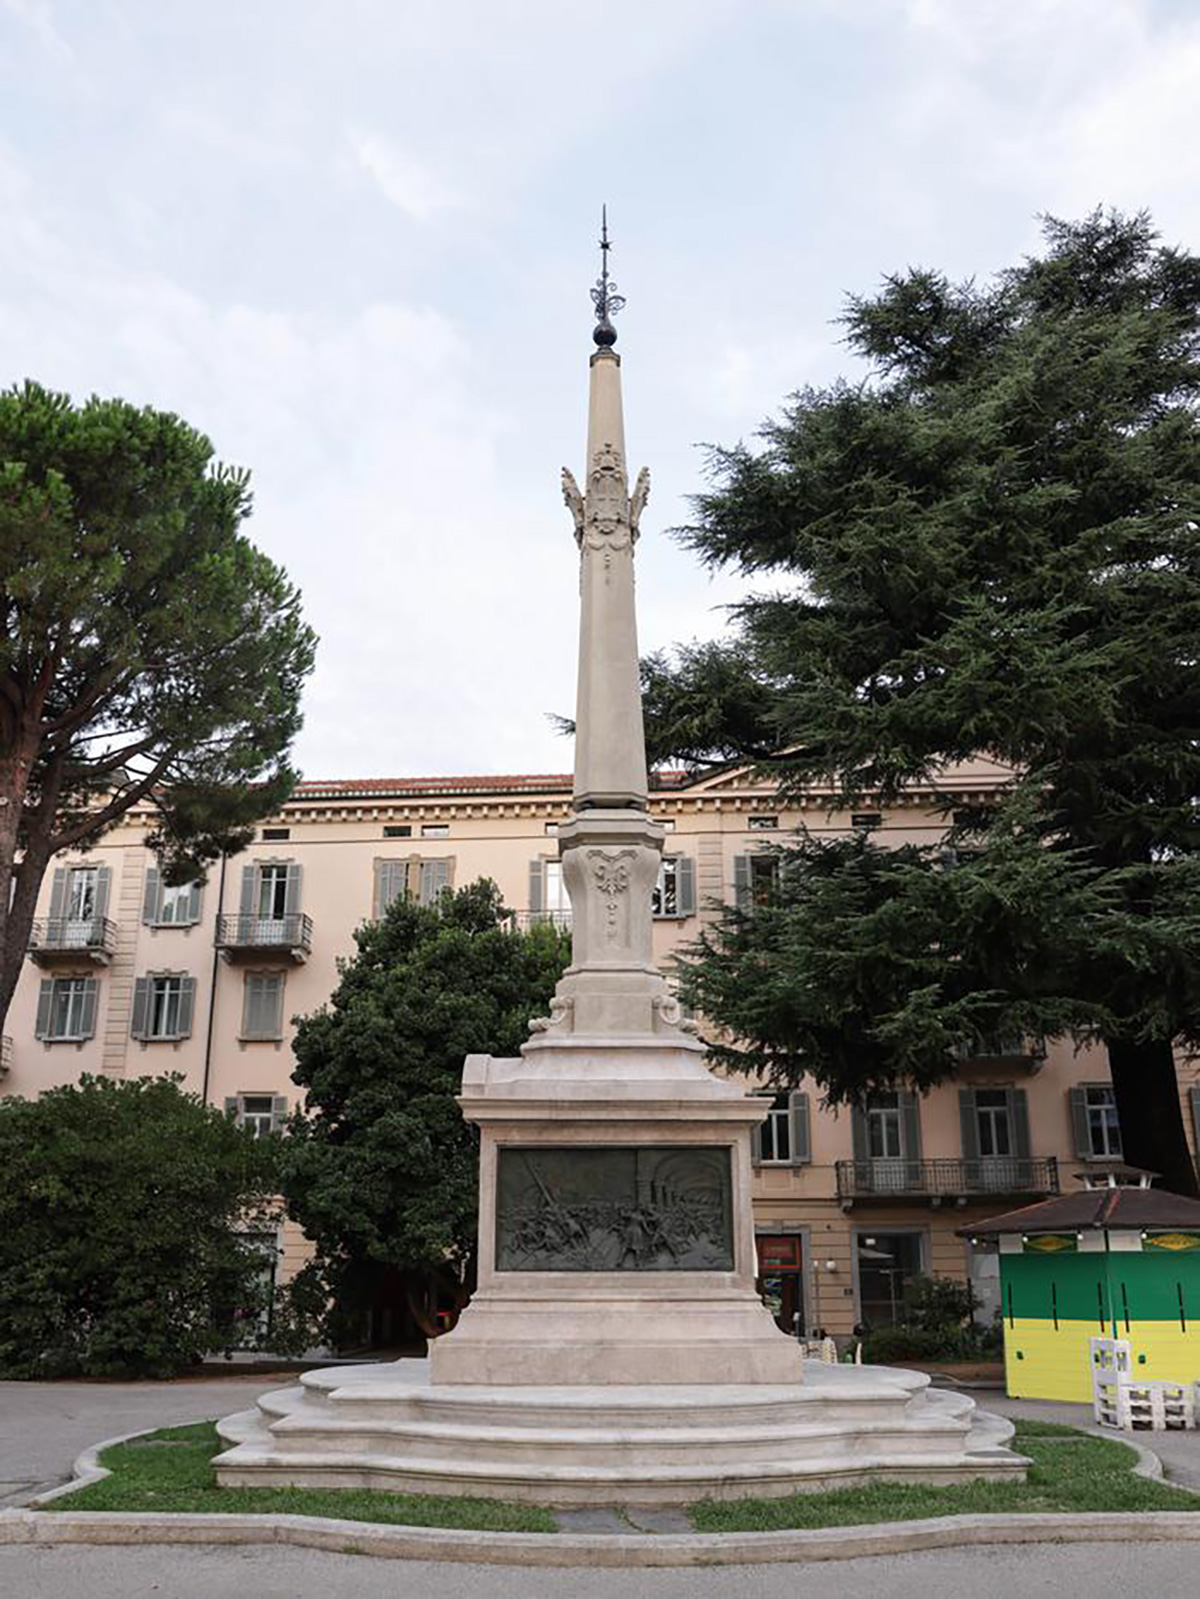 1898年5月1日、ティチーノ独立100周年を記念して記念碑が建てられ、この広場は「インディペンデンツァ広場」と改名された。記念碑の台座には、"Liberi e Svizzeri "の碑文と自由の樹の建立を描いたレリーフがある。